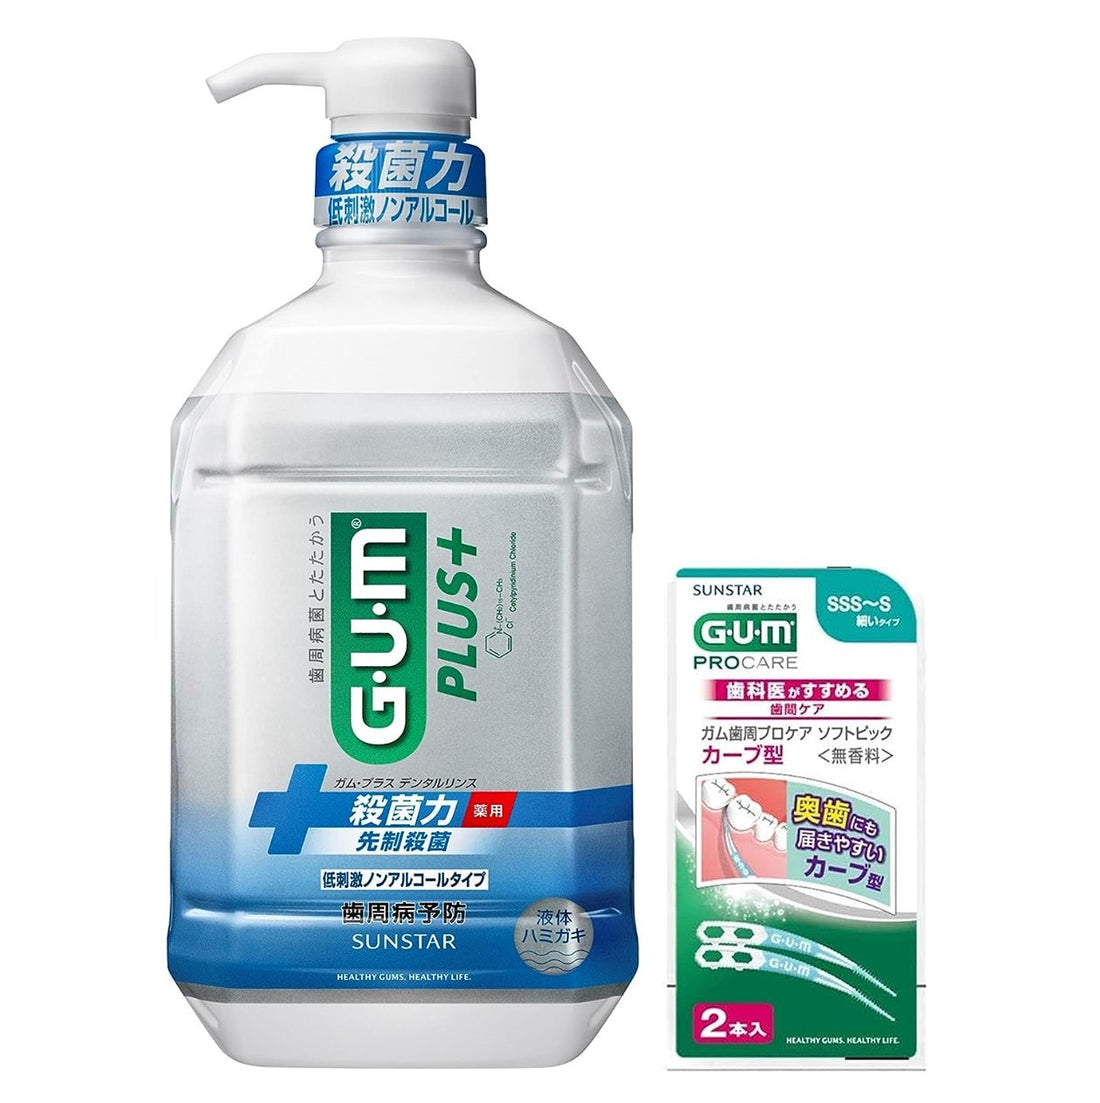 GUM Plus [Quasi-drug] Dental rinse, medicated liquid toothpaste [non-alcoholic, hypoallergenic, herbal mint] 900ml x 1 bottle + bonus - NihonMura